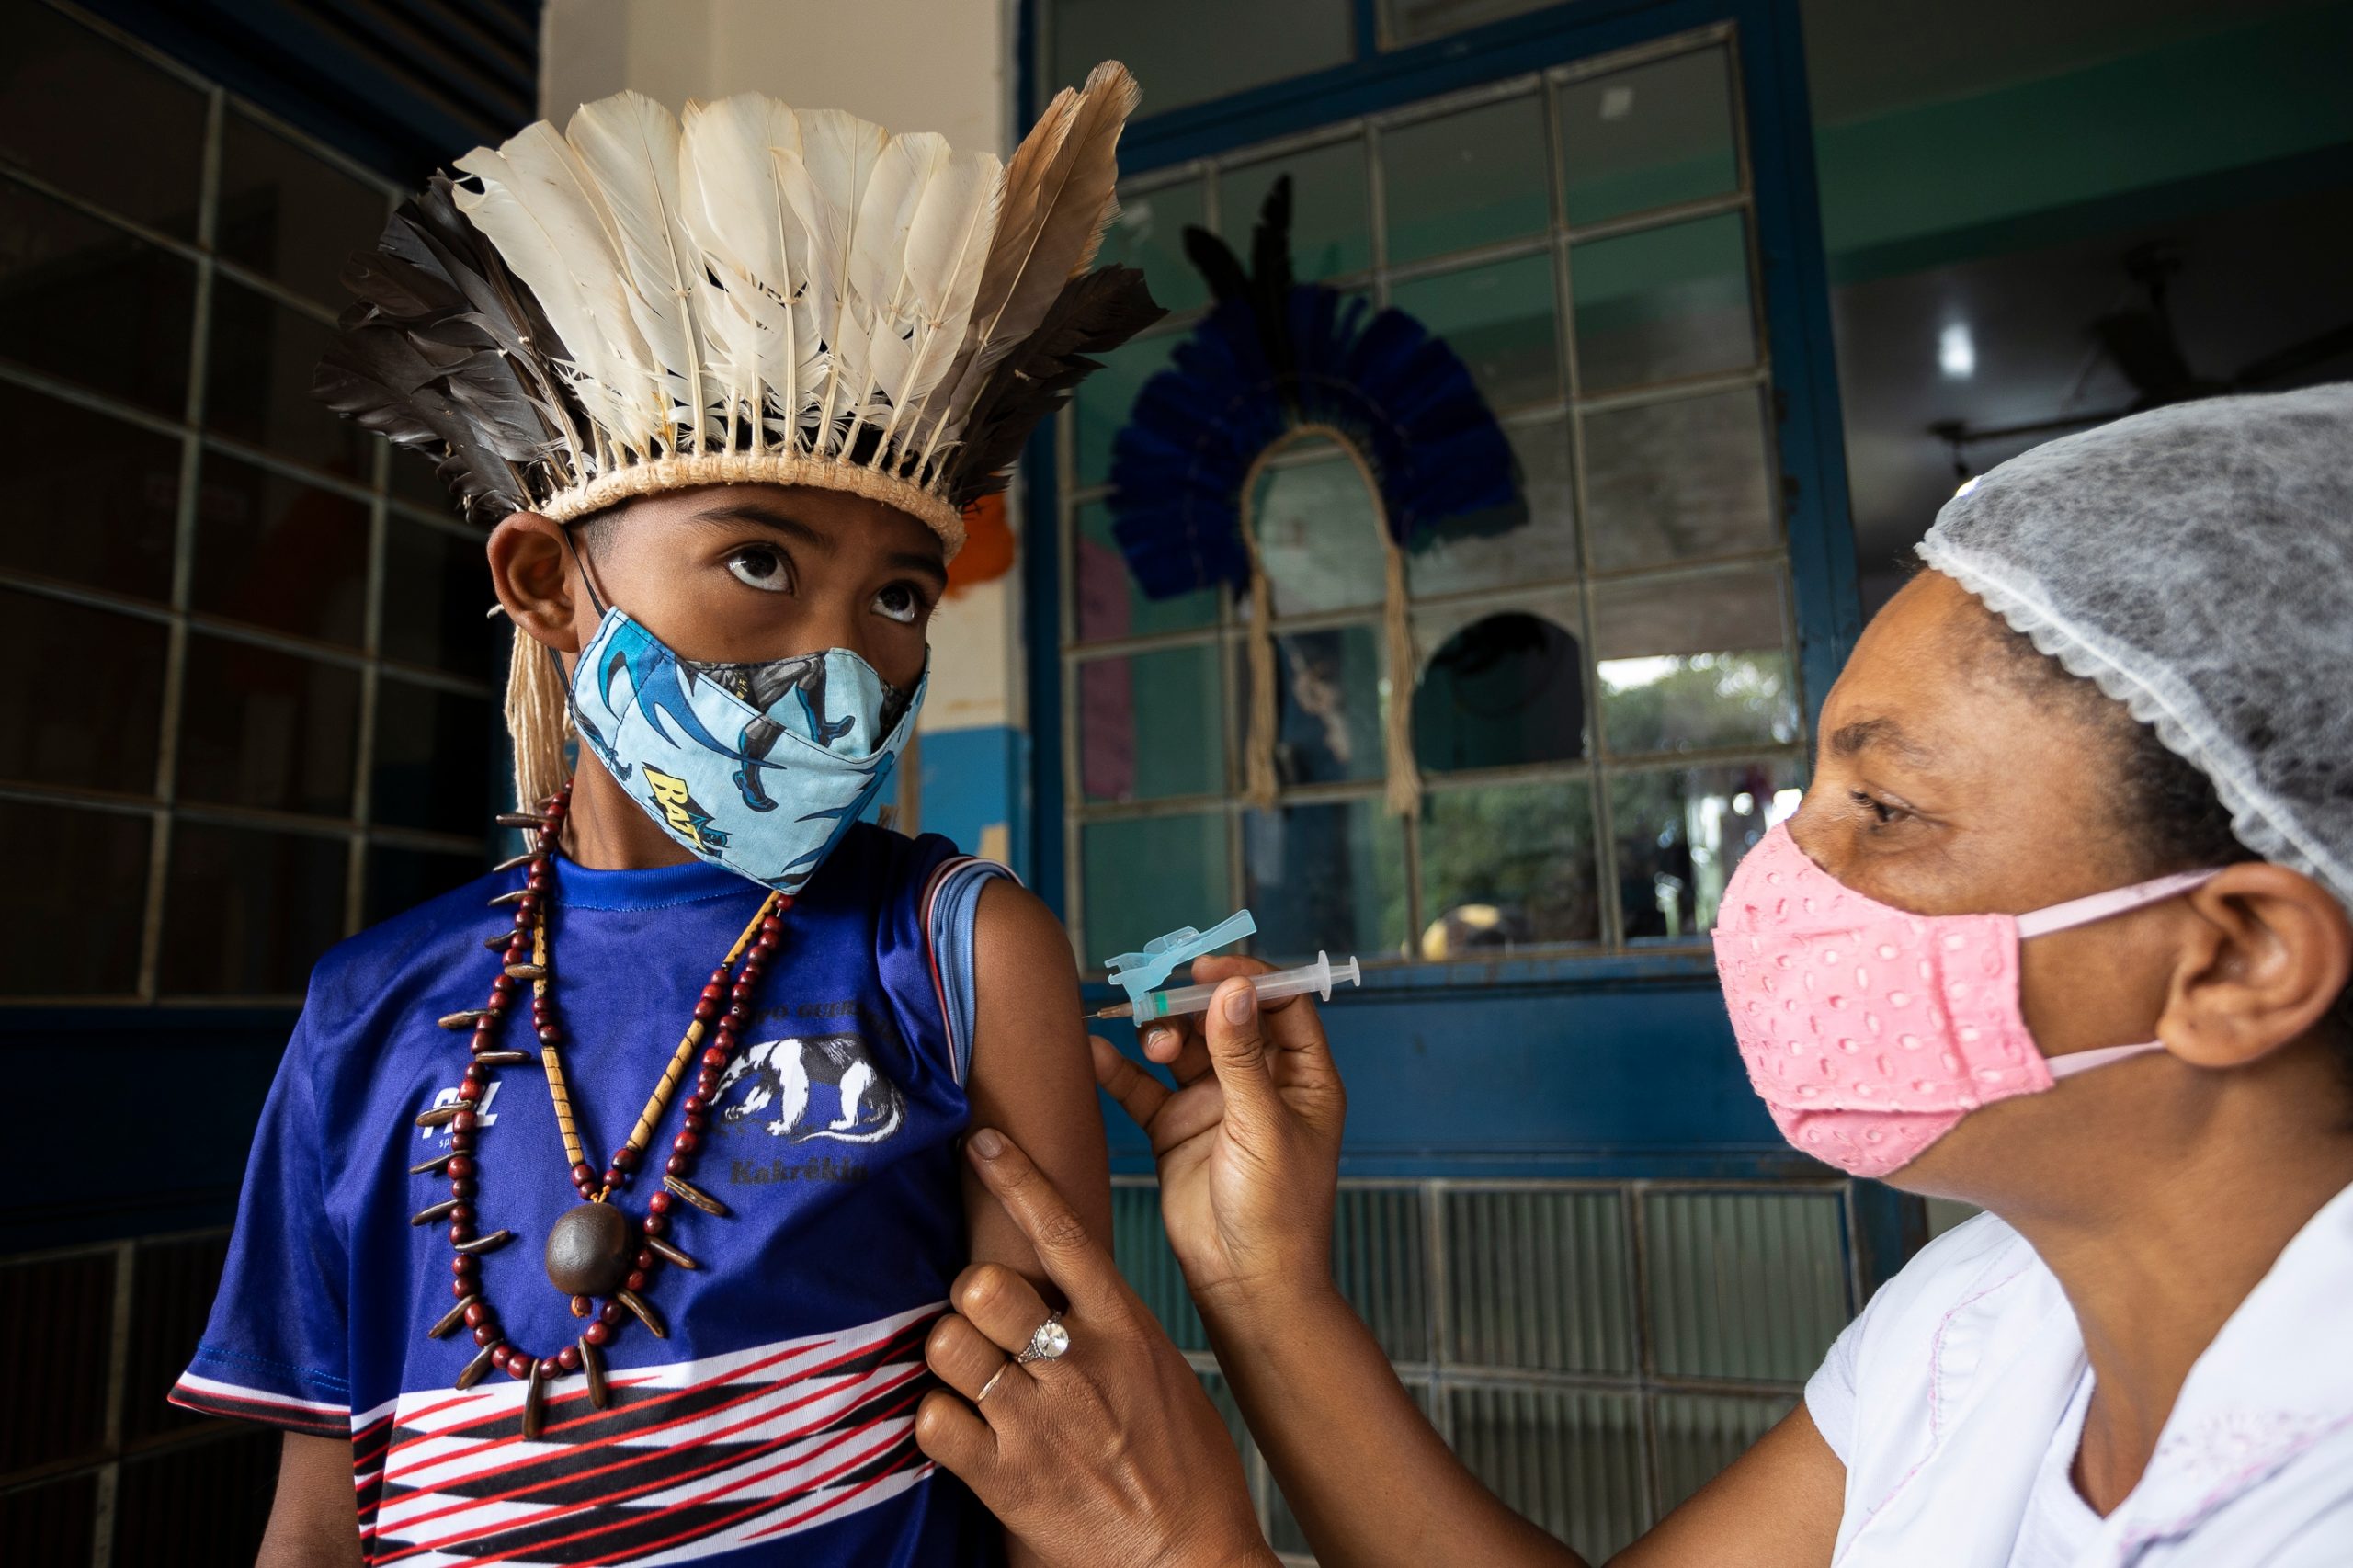 Criança indígena, usando mascará e adereços de sua tribo, sendo vacinada por uma enfermeira.